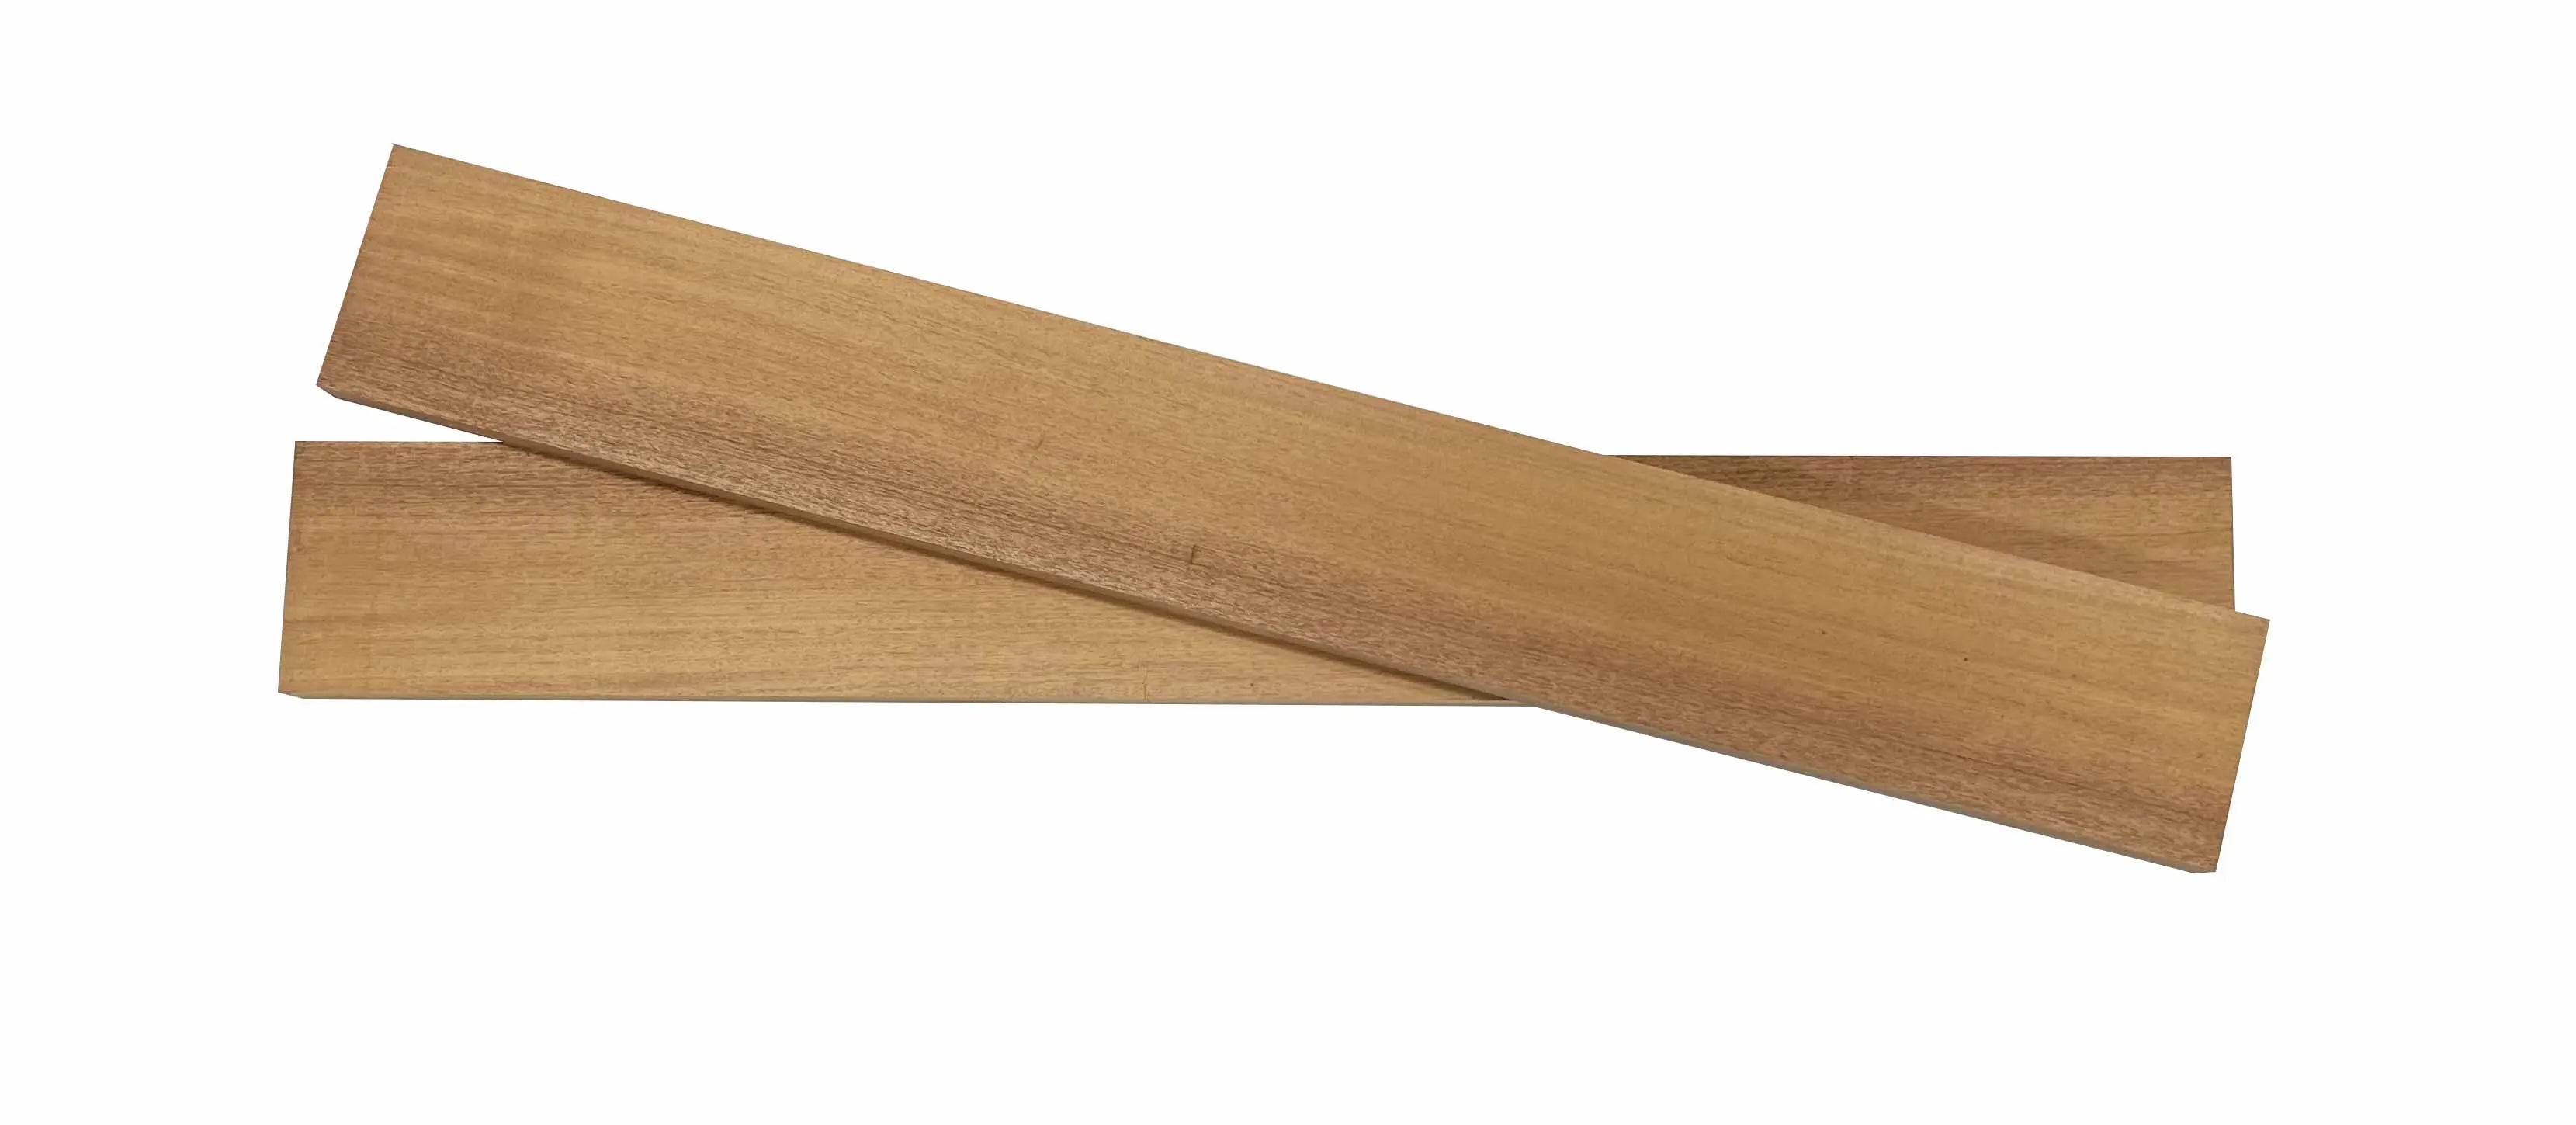 Paquete de zona de madera exótica de 10, caoba africana/Khaya 3/4 x 2 x 18  tablas de madera / bloque de tabla de cortar / bricolaje / artesanía de  madera / tablas de cortar -  España